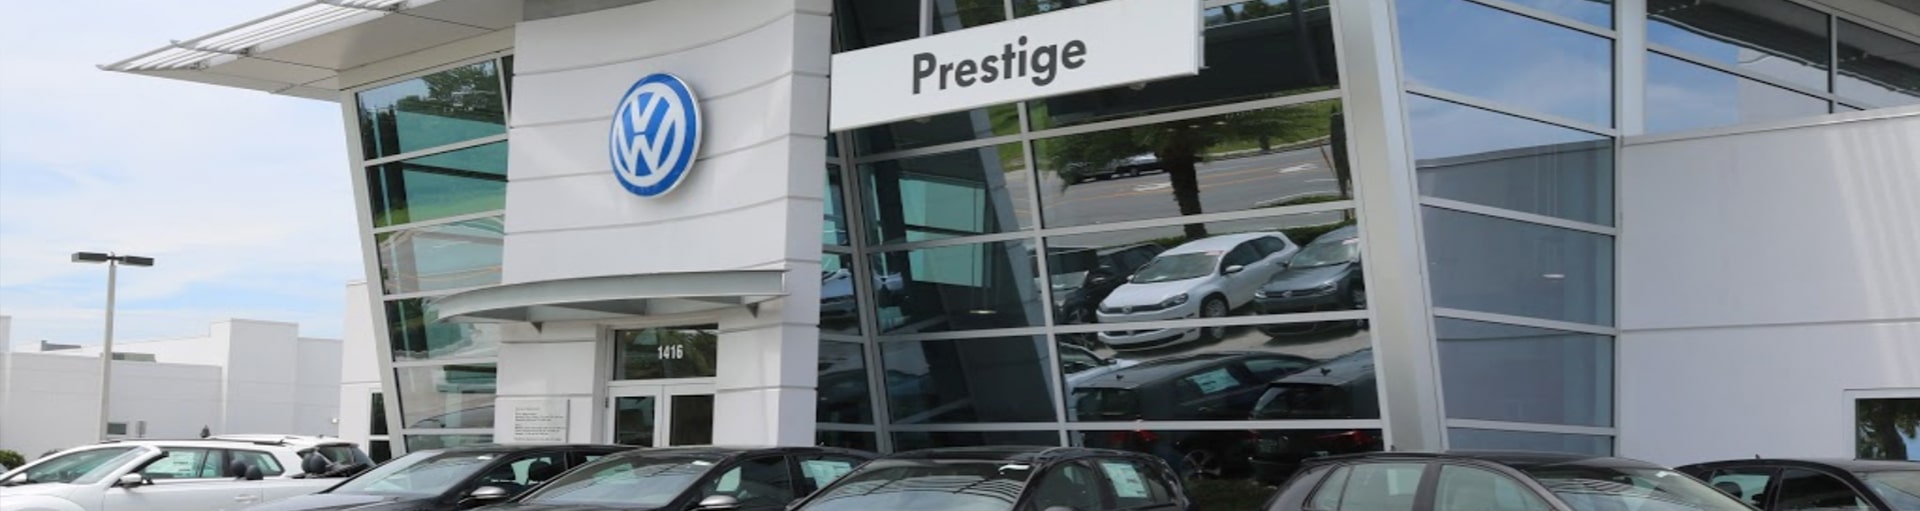 Prestige Volkswagen of Melbourne Transmission Fluid Exchange